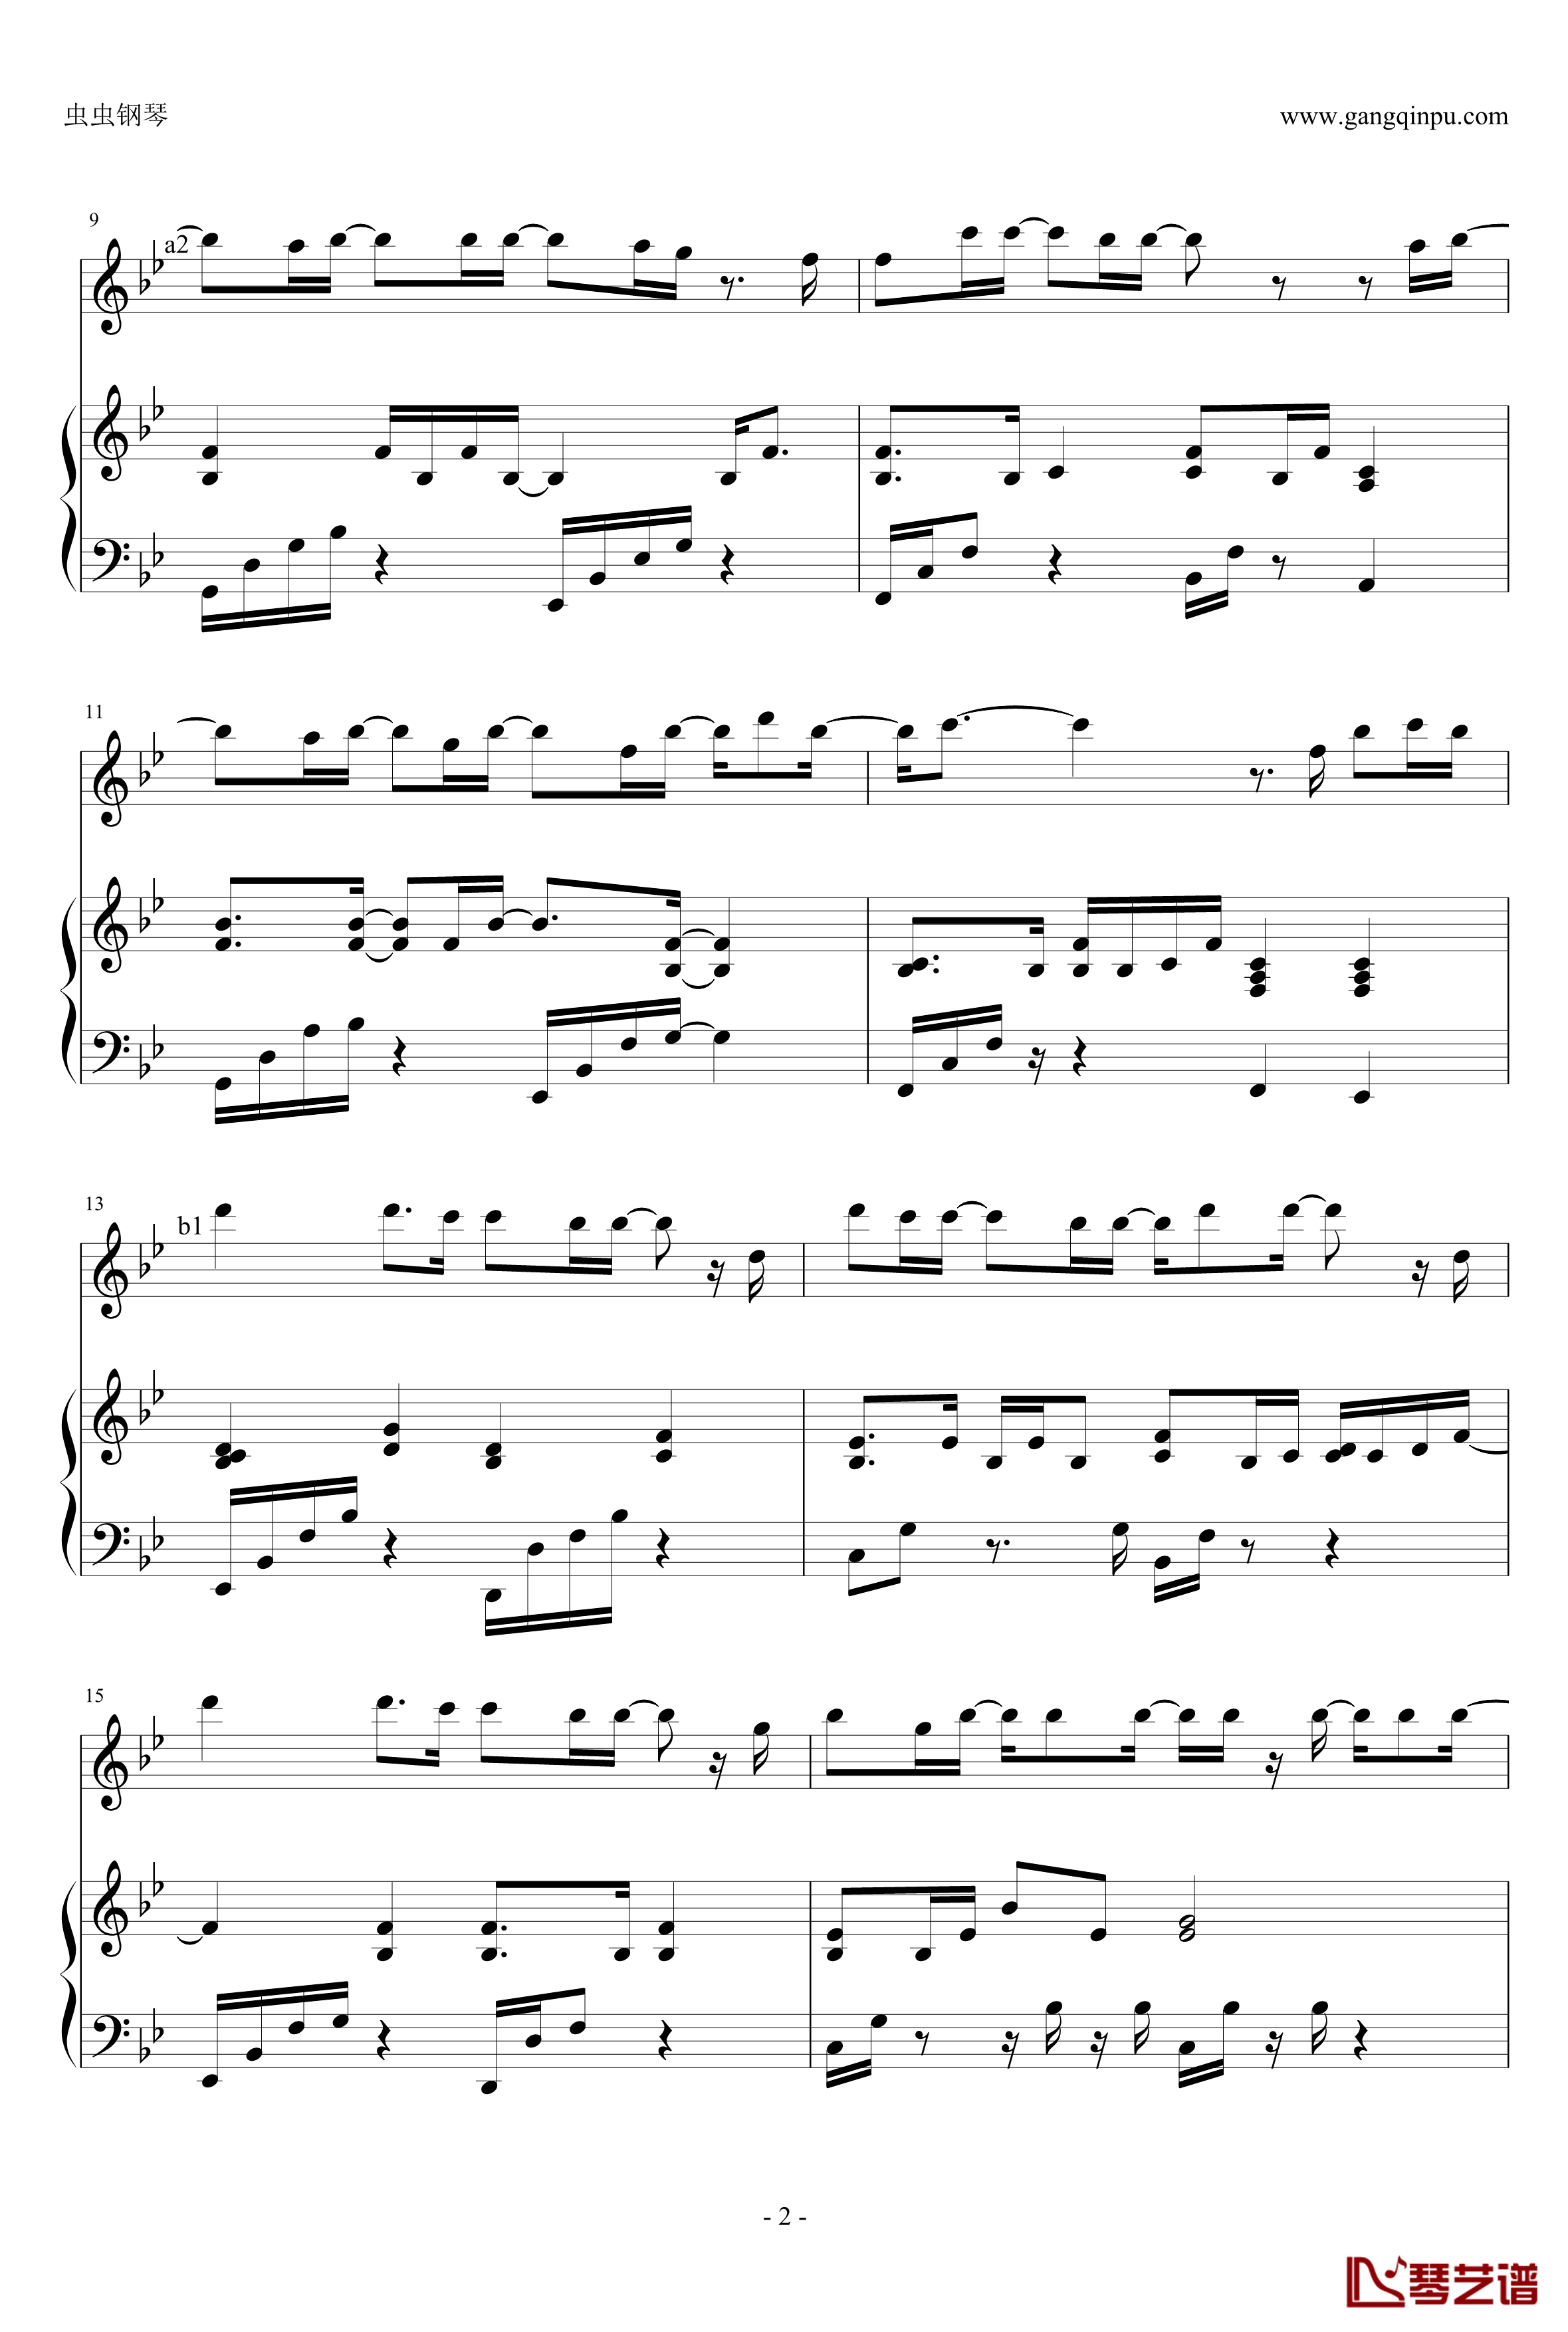 自我催眠钢琴谱-周杰伦弹唱版-周杰伦2